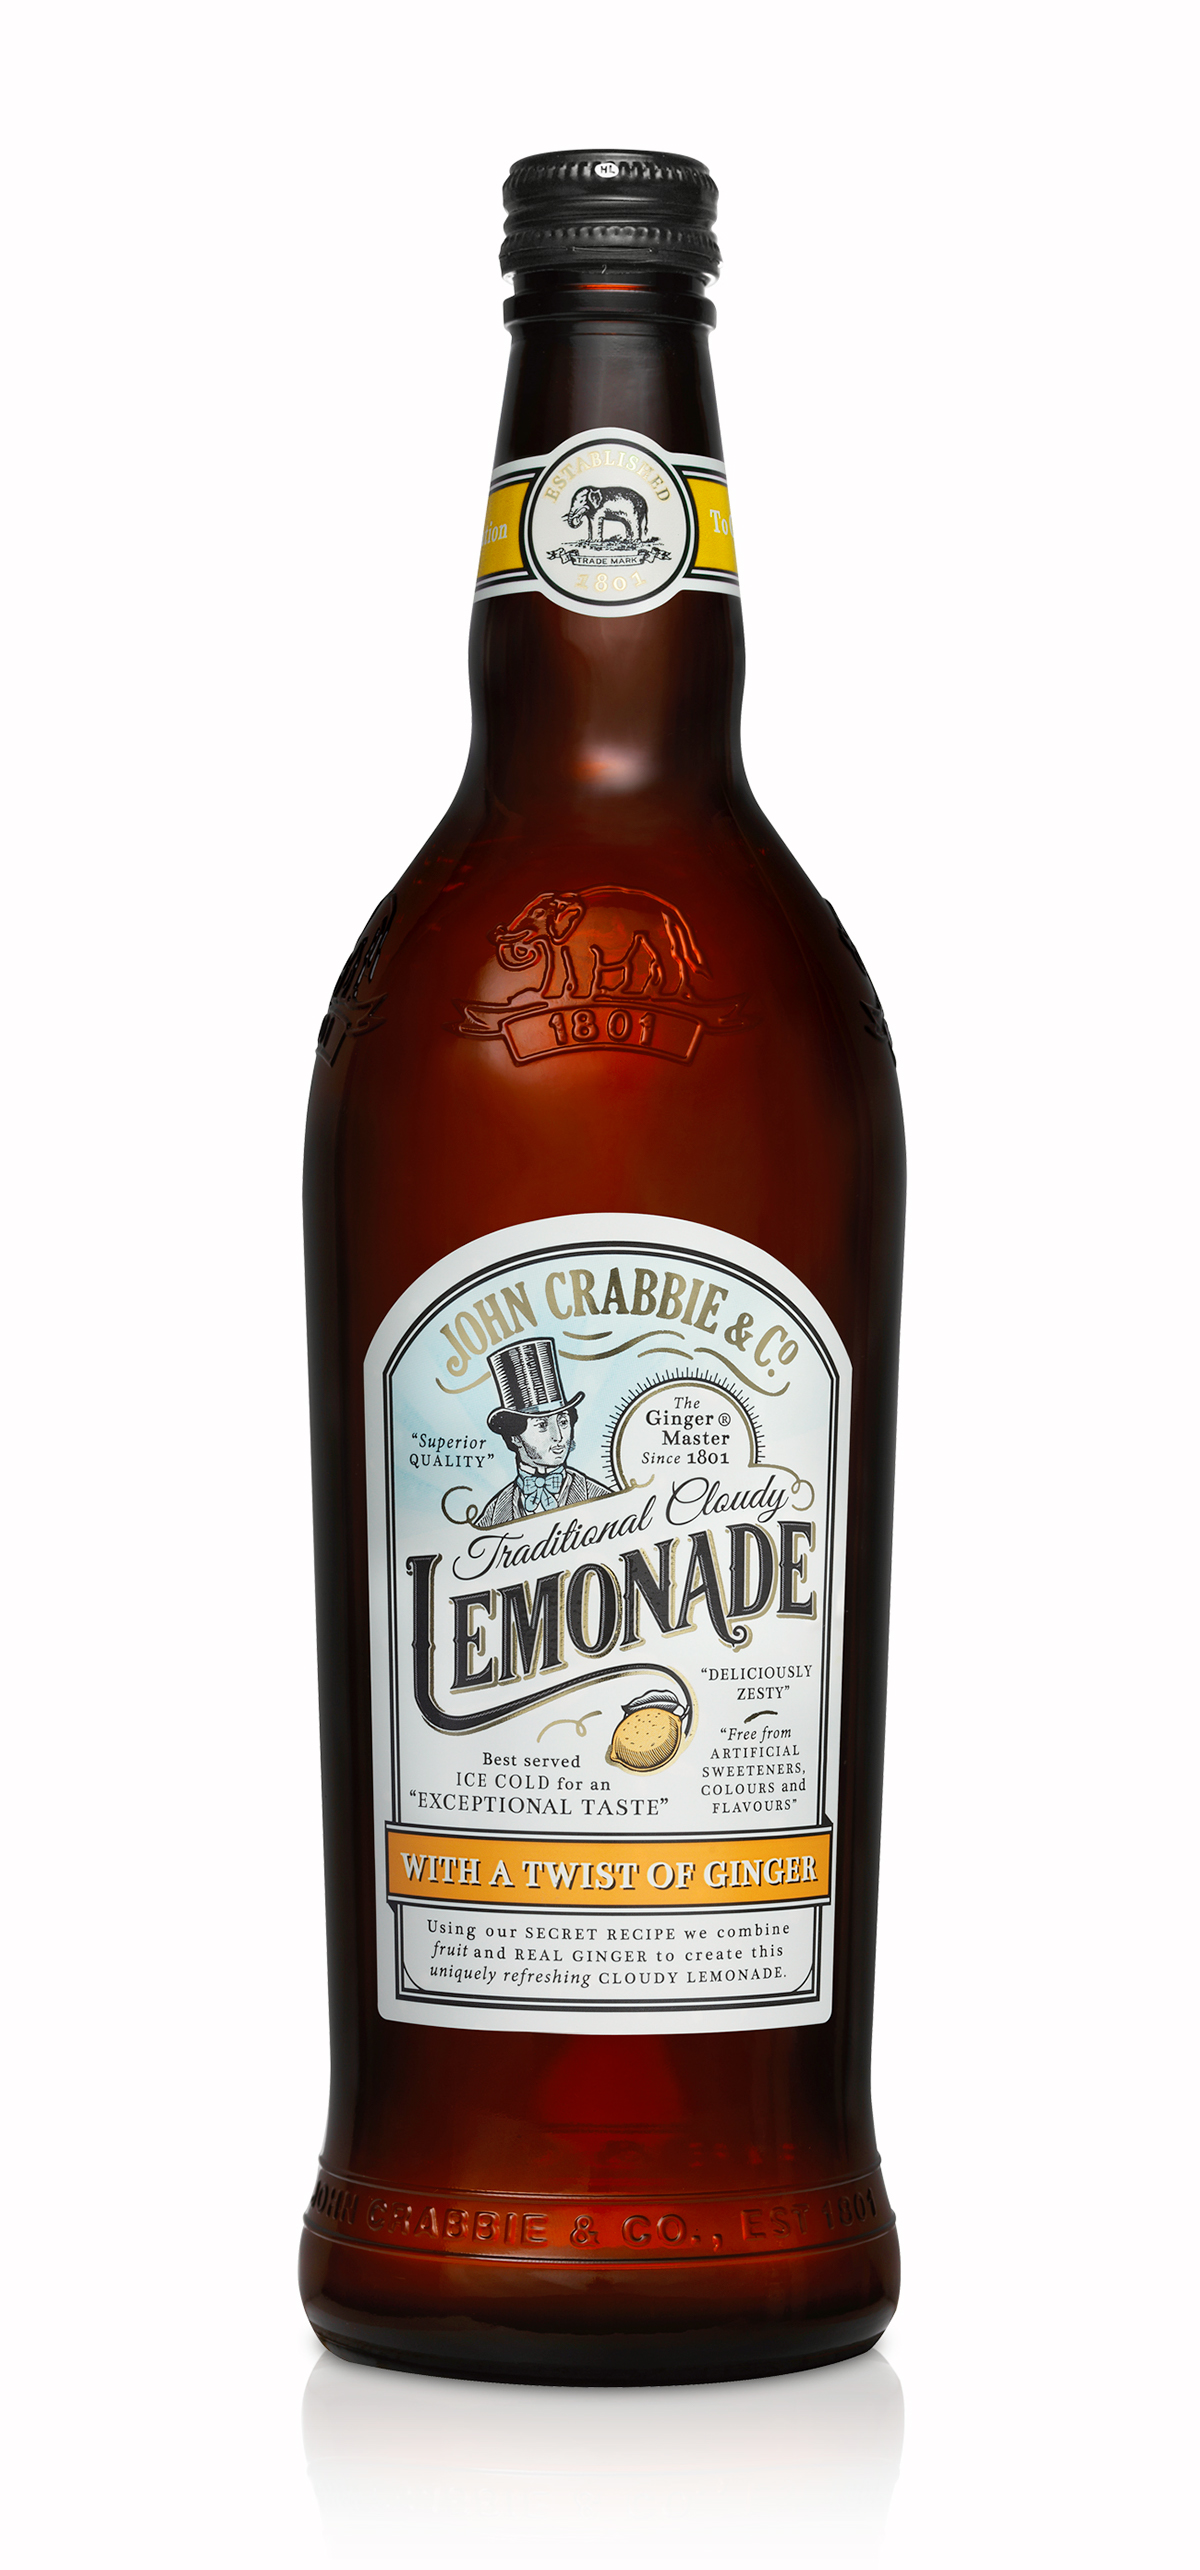 traditional soft drink label design raspberry ginger beer lemonade